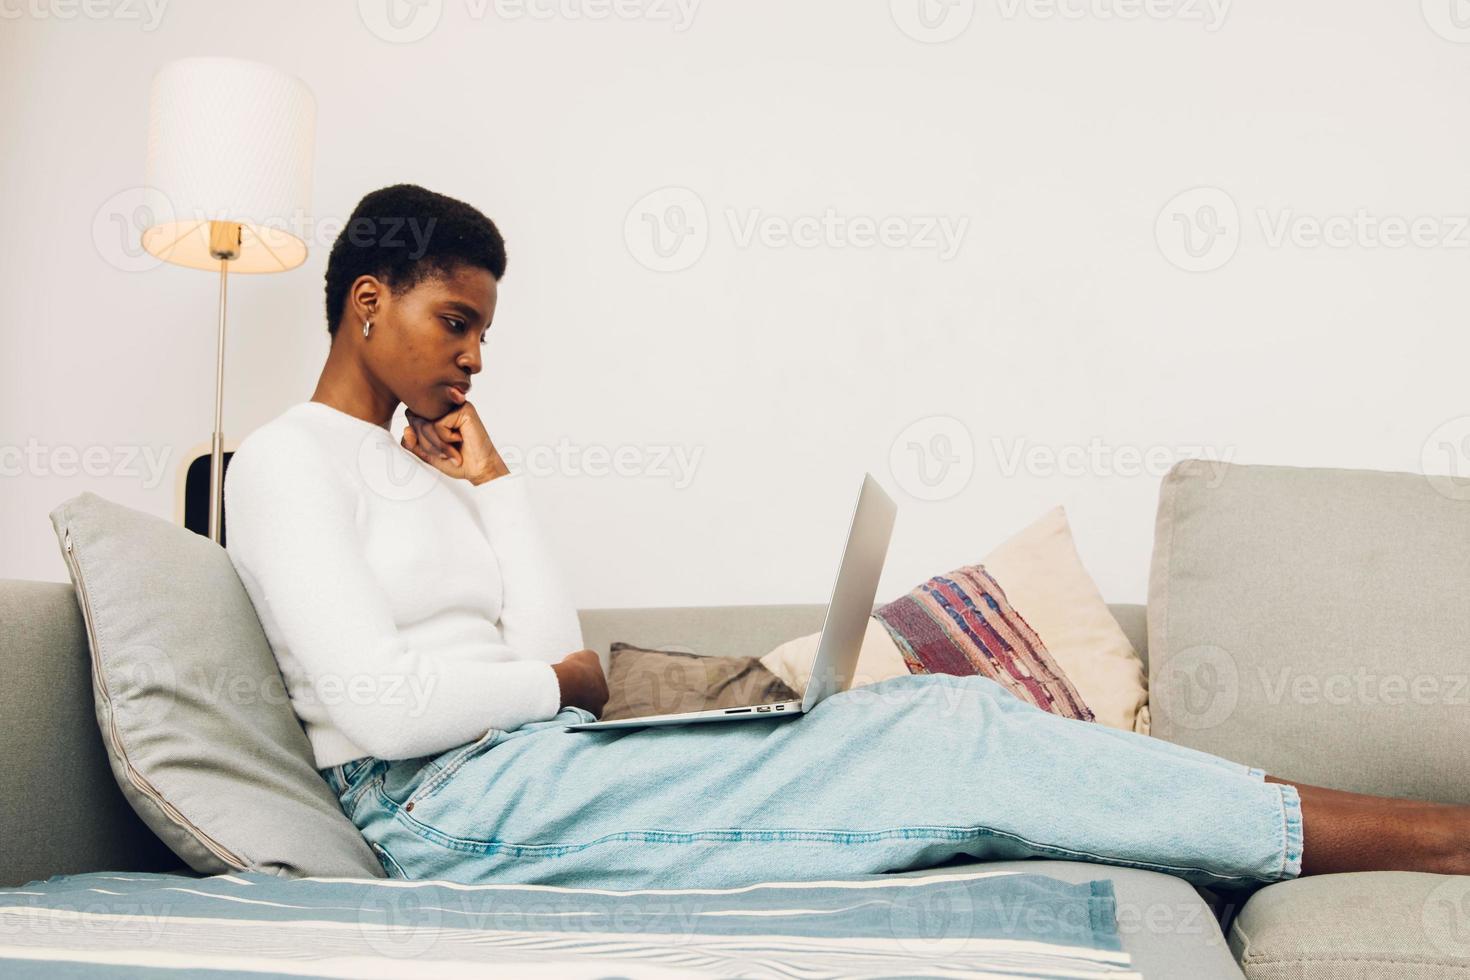 femme utilisant un ordinateur portable à la maison photo